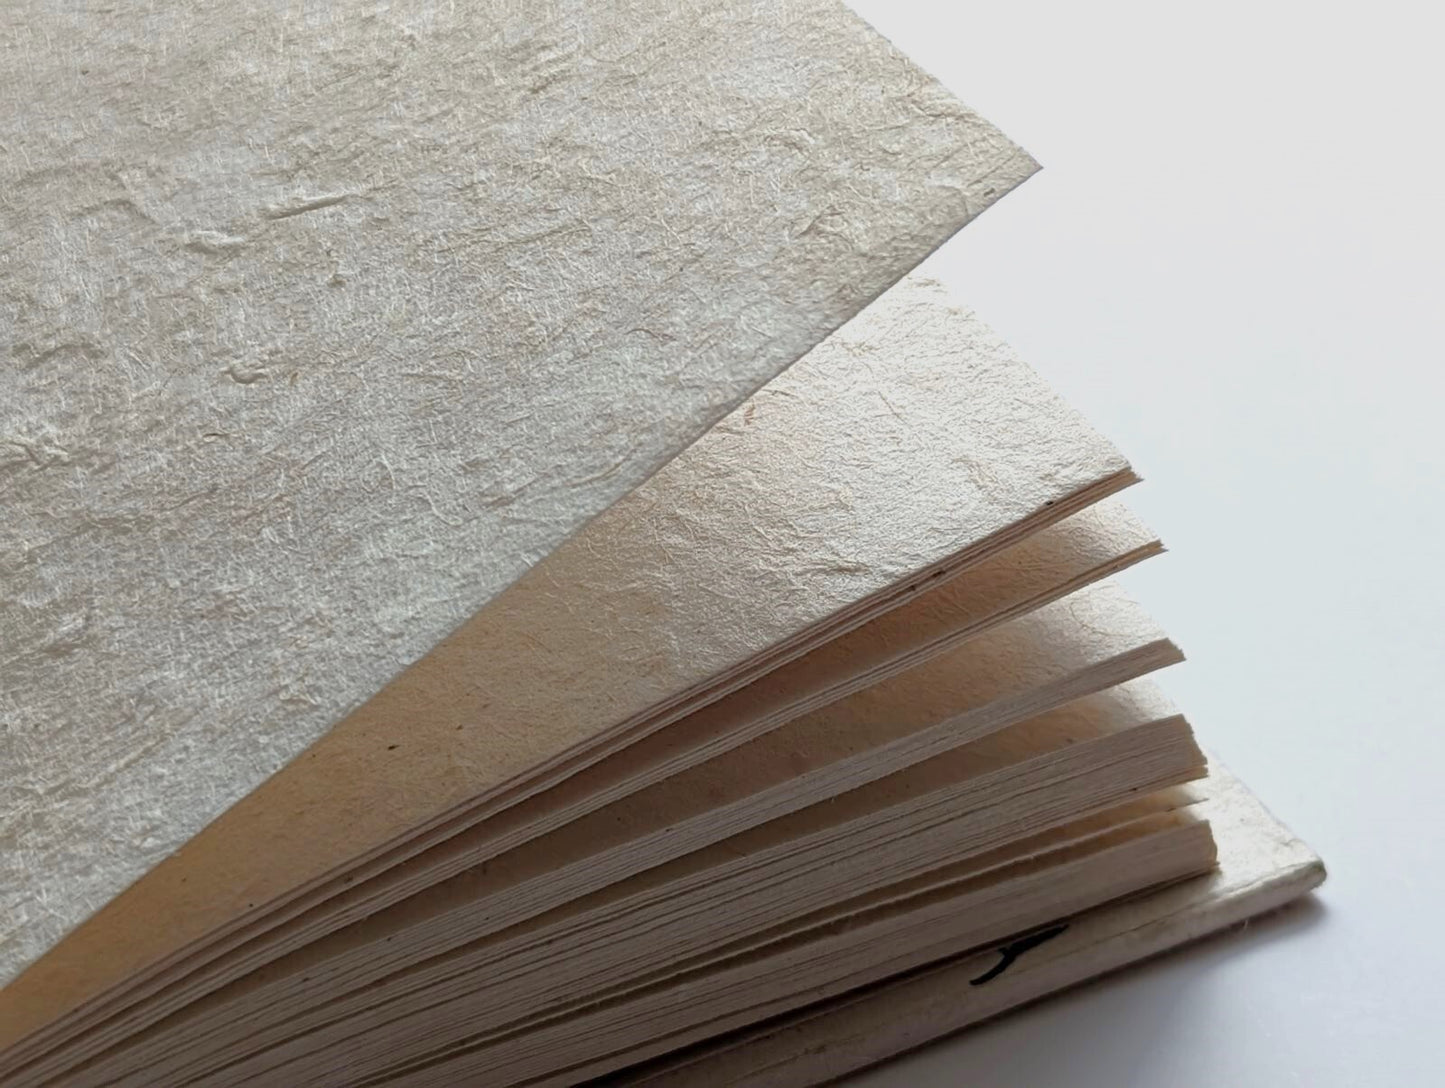 Handmade Paper Journal | Indigo Blue on Beige